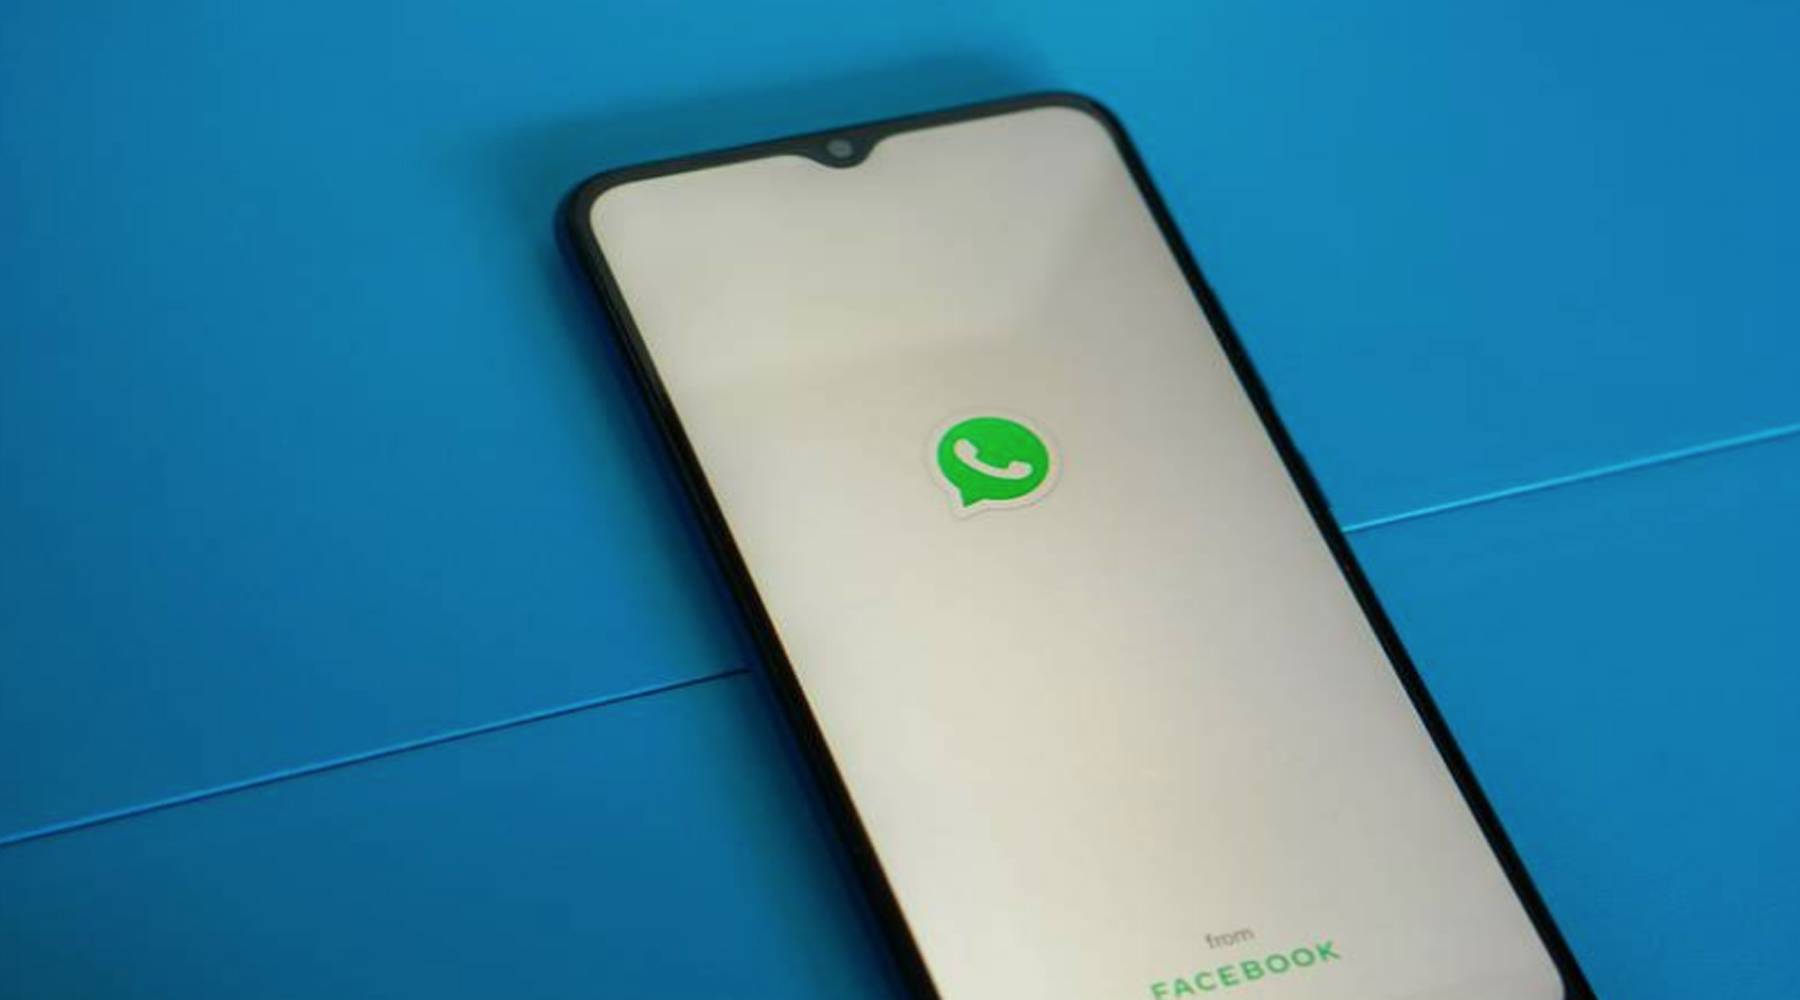  WhatsApp: ¿Cómo mandar audios con la voz del Chavo del 8 y sin descargar apps extrañas?